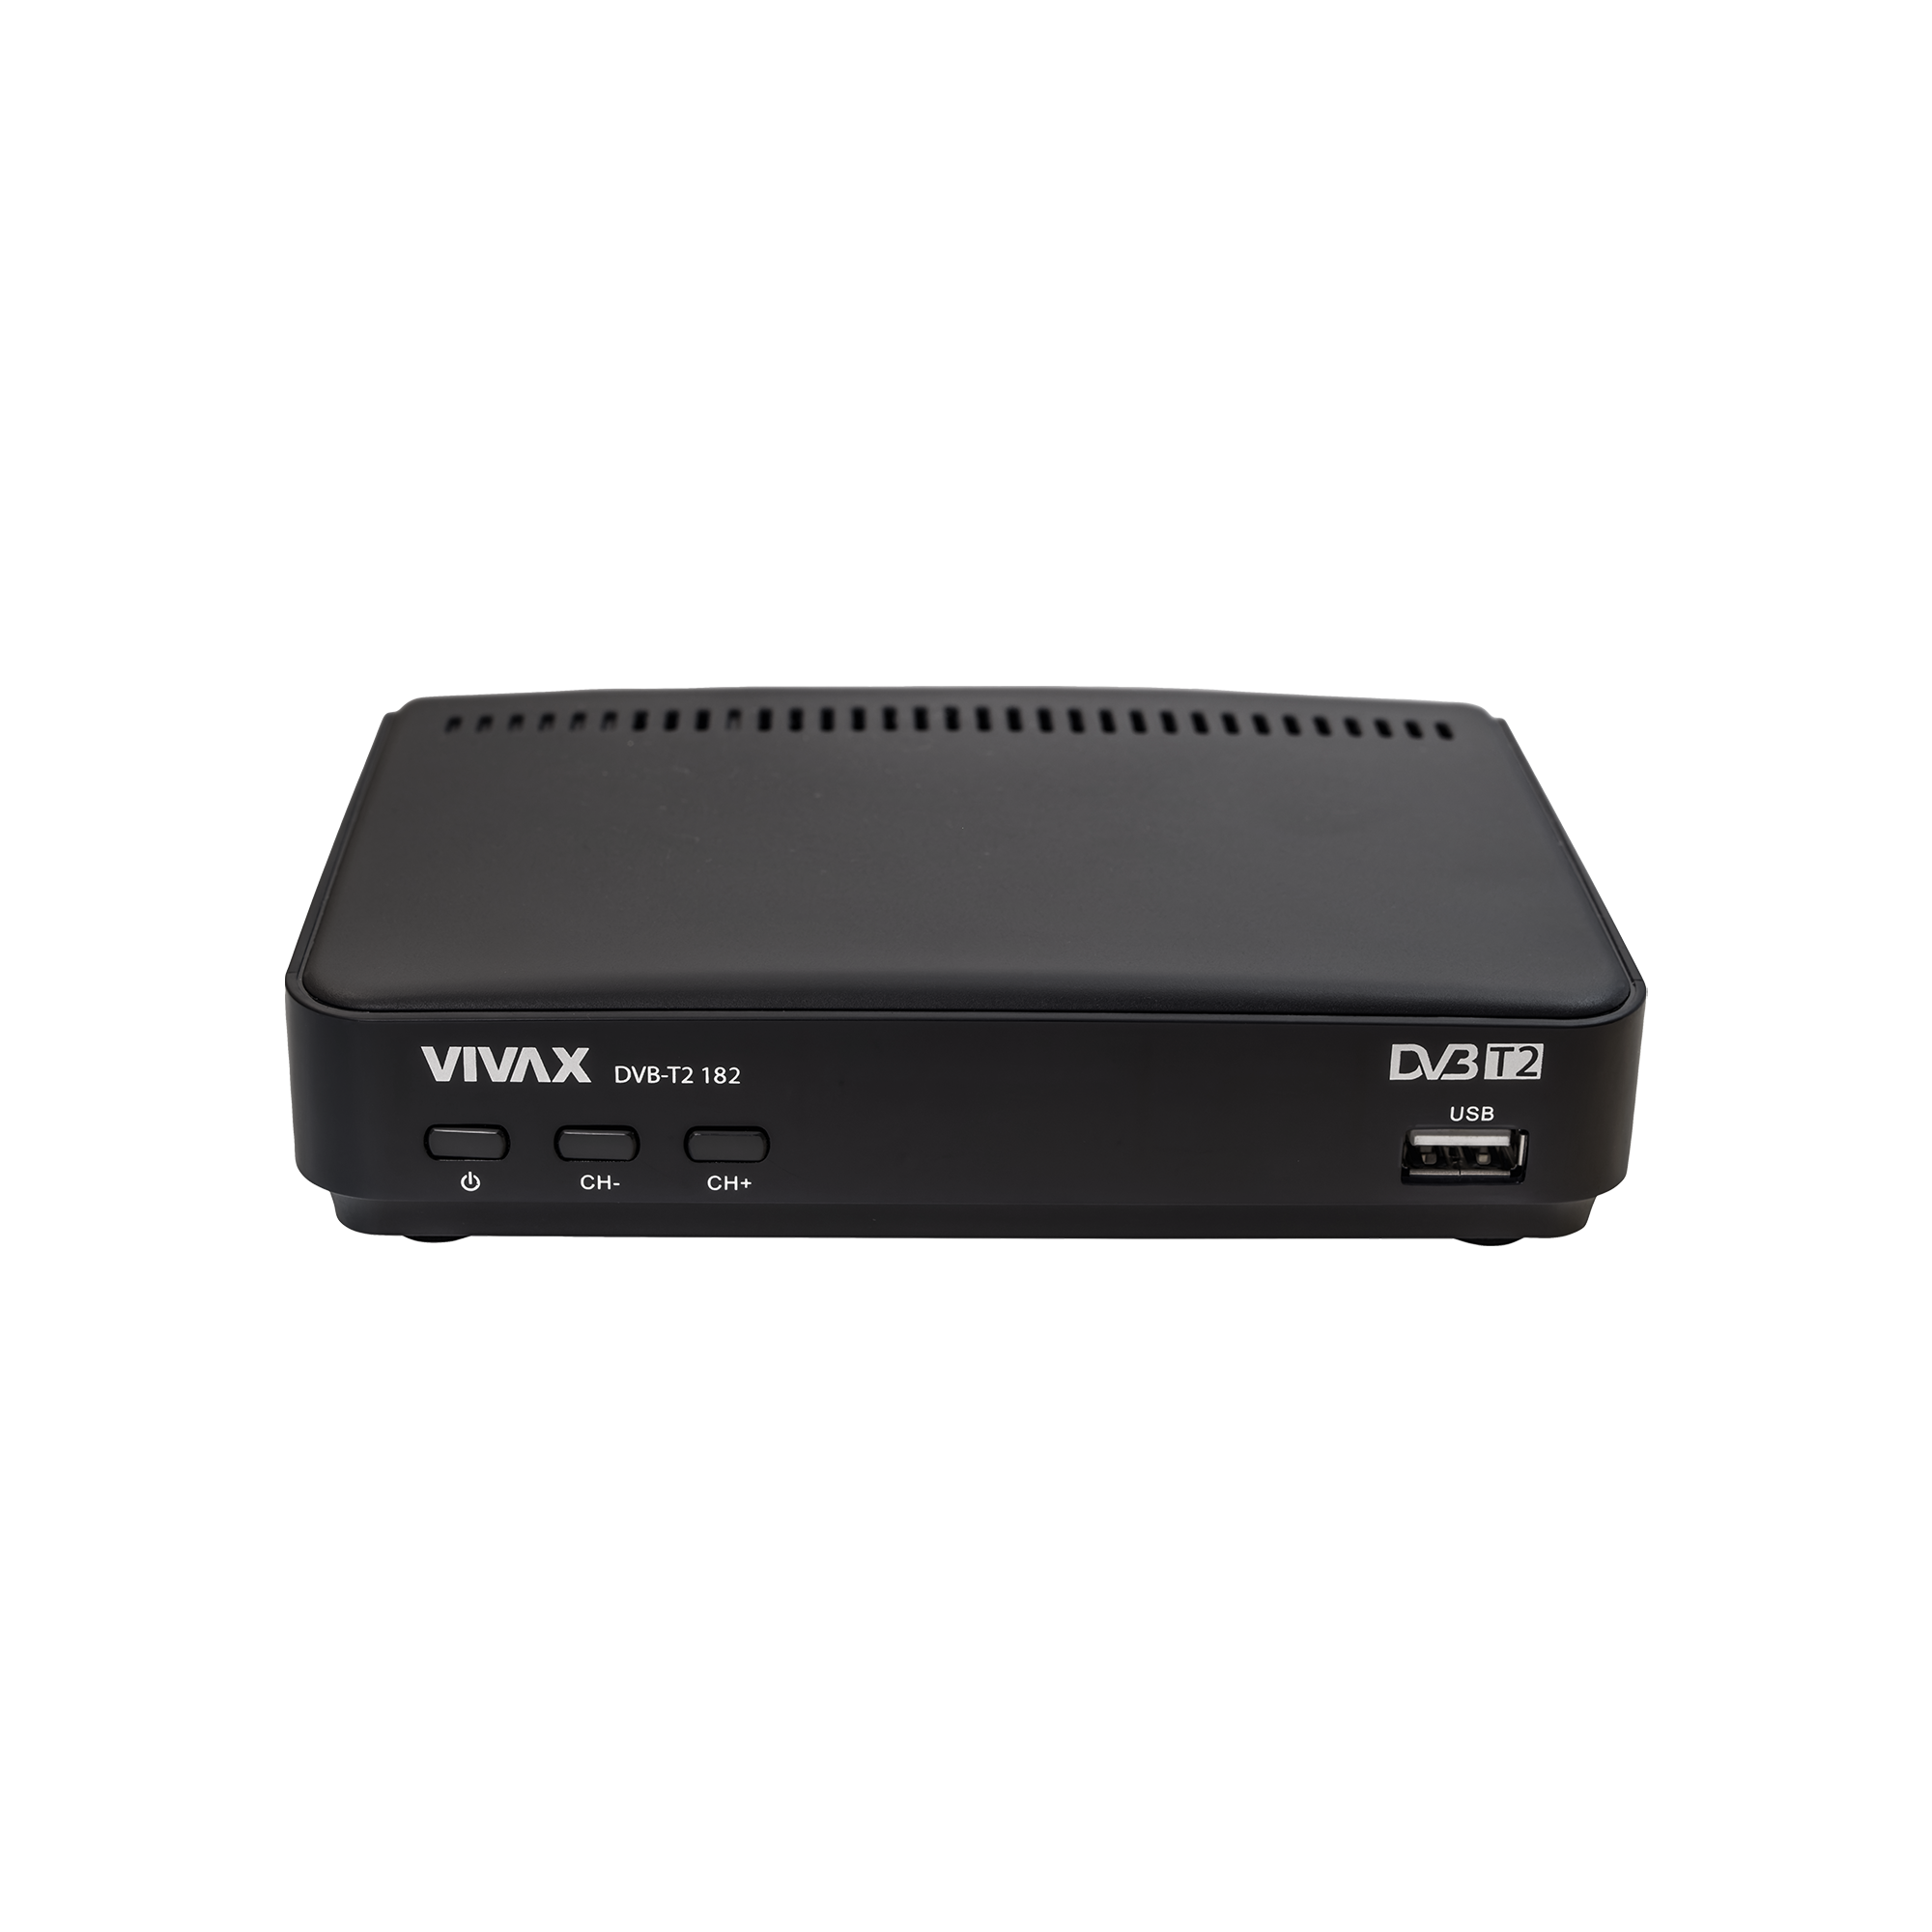 TDT HD REPRODUCTOR-GRABADOR DVB-T2 MUVIP